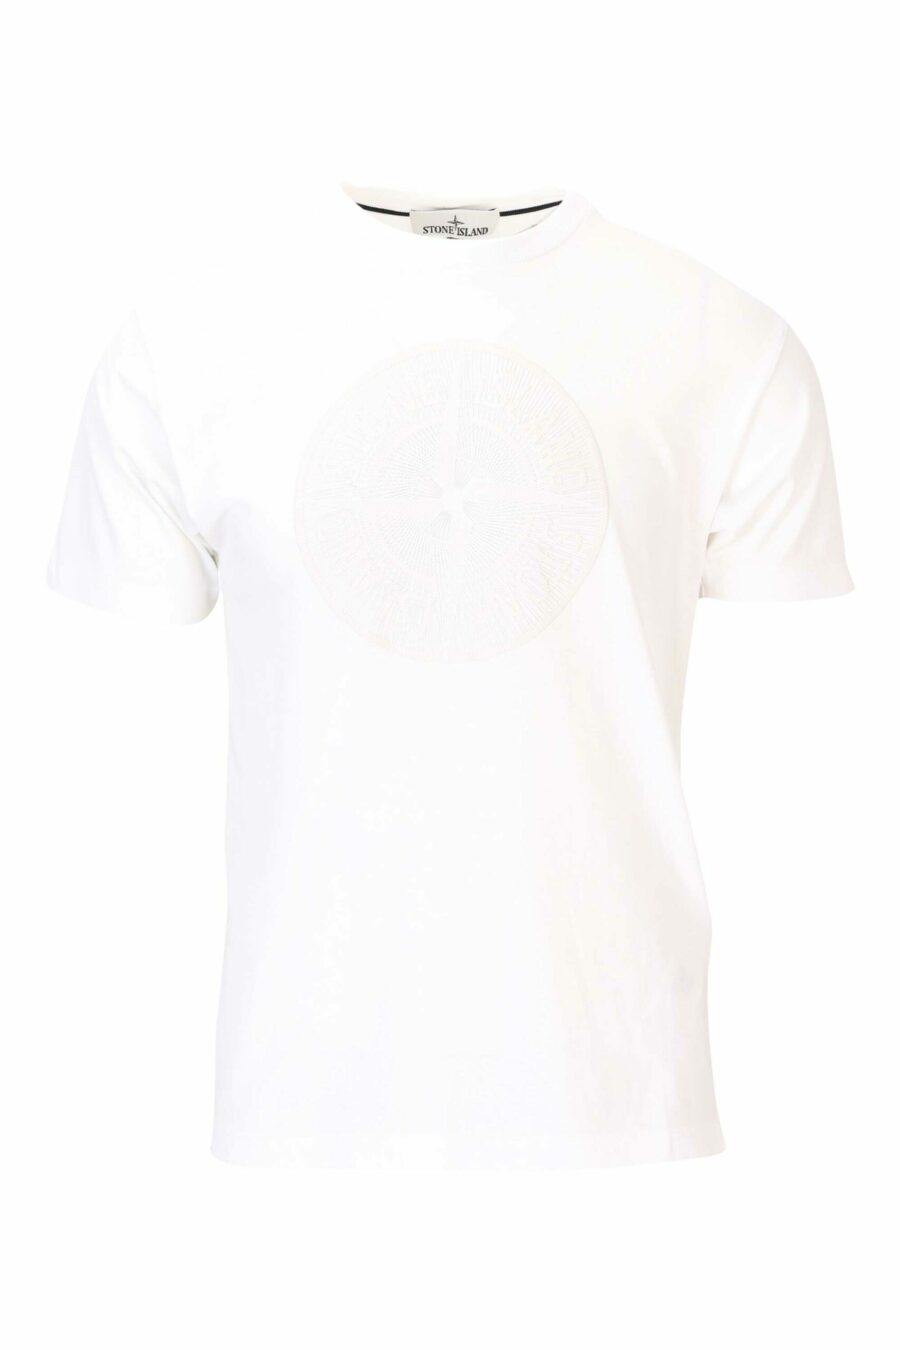 T-shirt blanc avec maxilogo circulaire sur le devant - 8052572742361 scaled